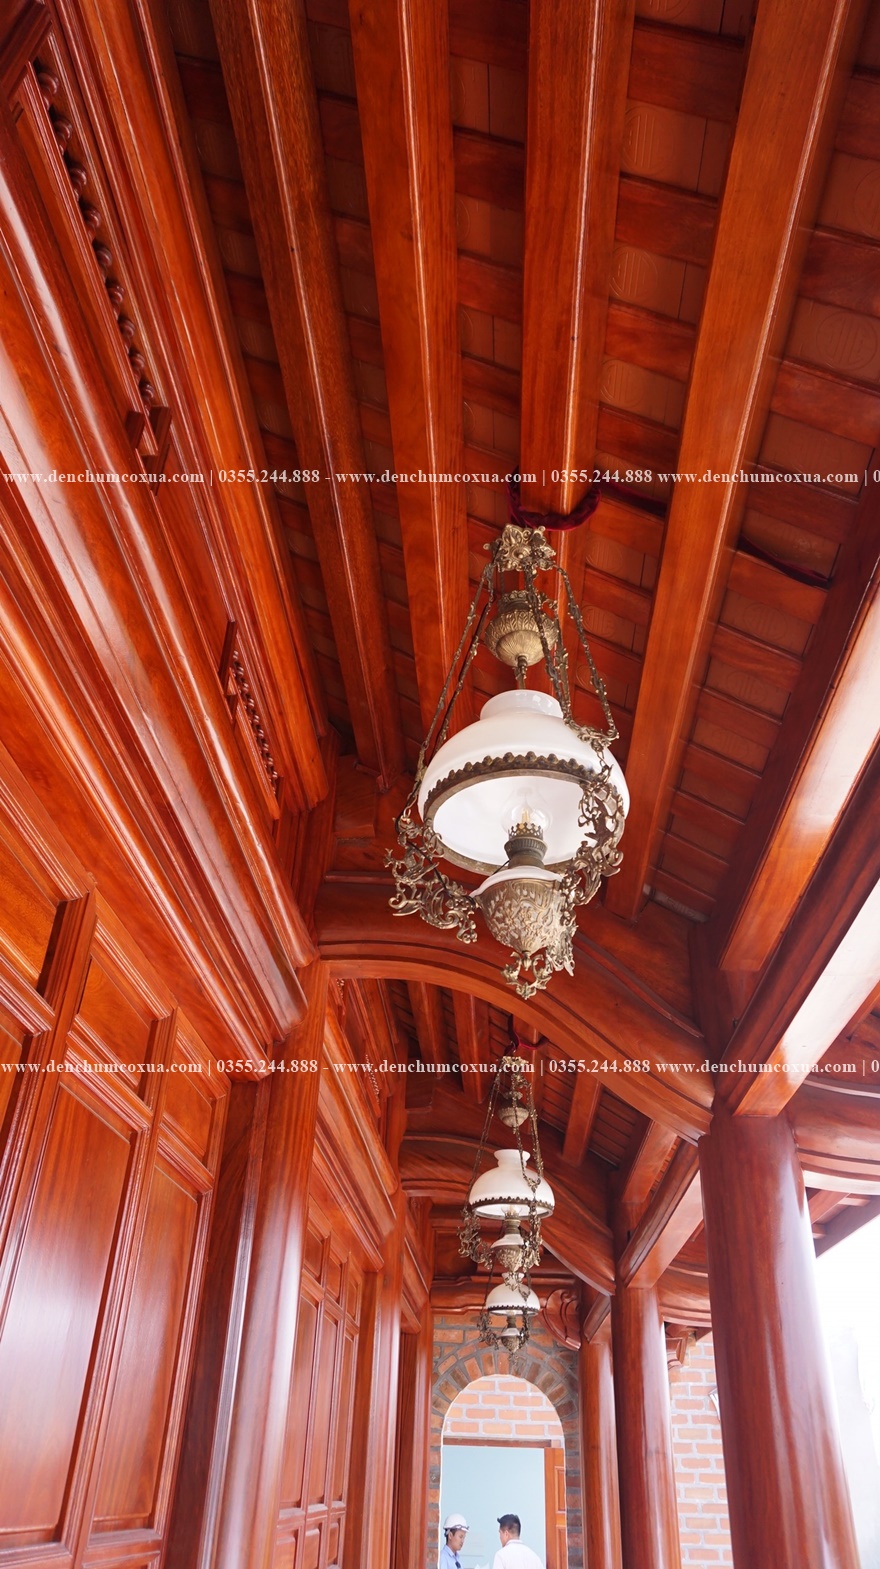 Bộ 3 đèn treo trần mái hiên 32cm đã làm hài lòng vị khách Thanh Hóa